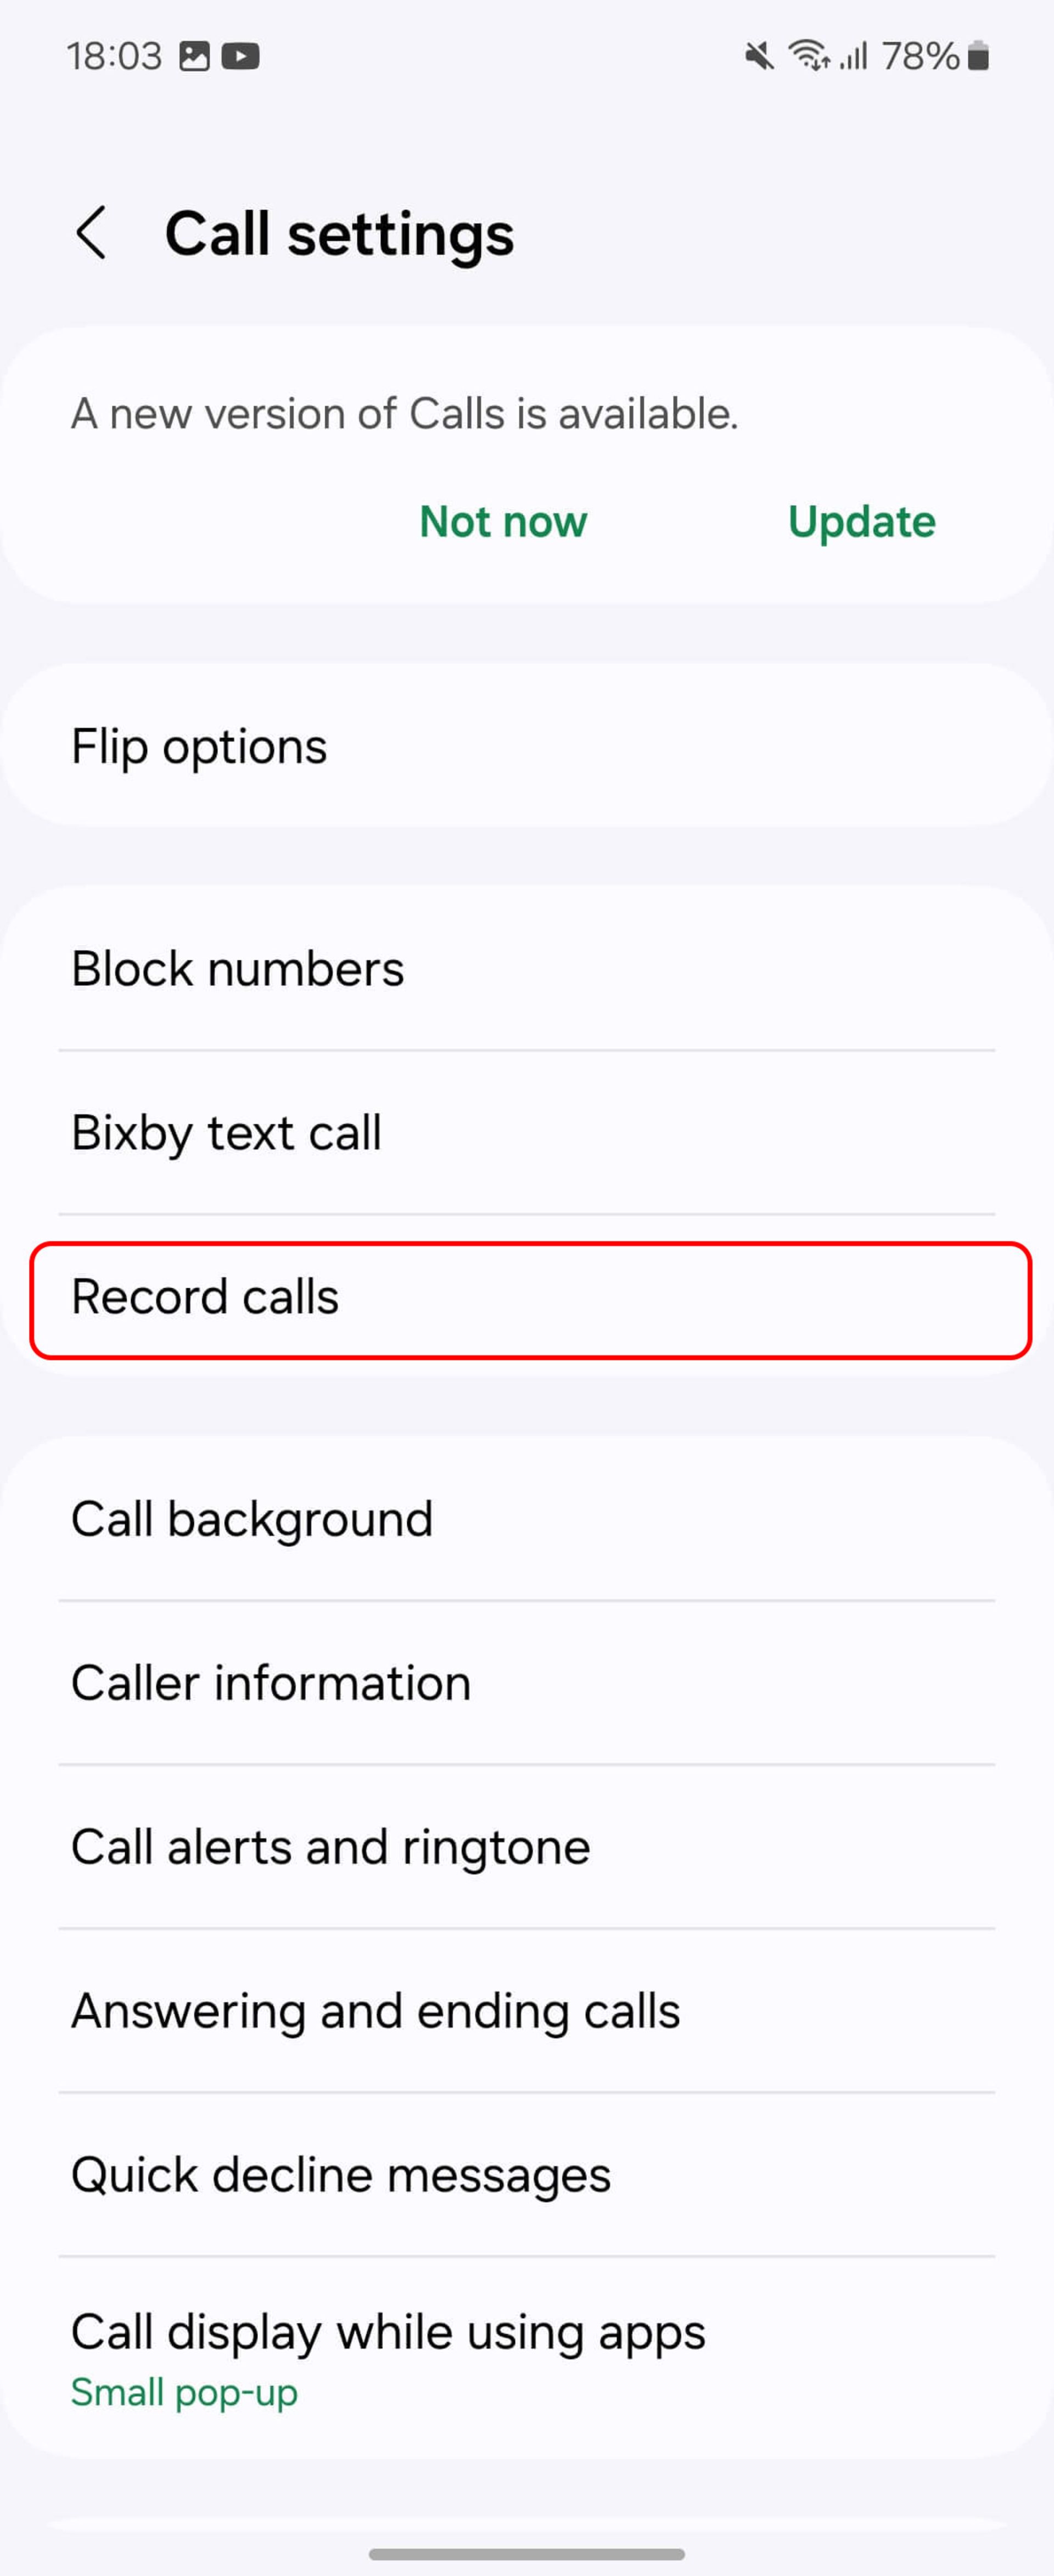 انتخاب منوی ضبط تماس‌ ها (Record calls)